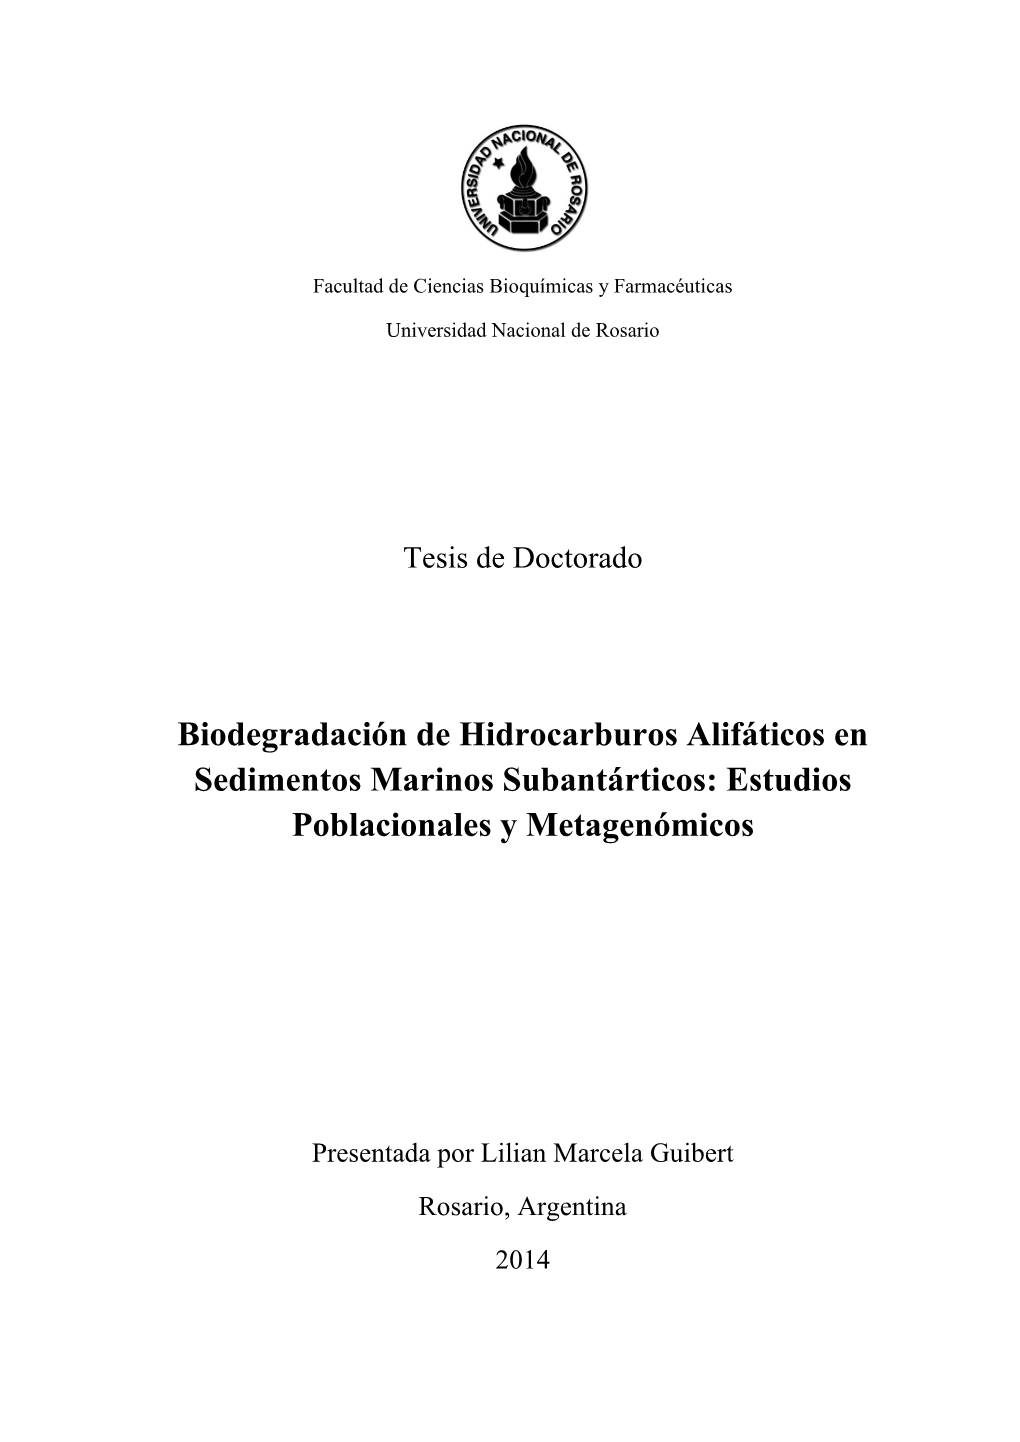 Biodegradación De Hidrocarburos Alifáticos En Sedimentos Marinos Subantárticos: Estudios Poblacionales Y Metagenómicos